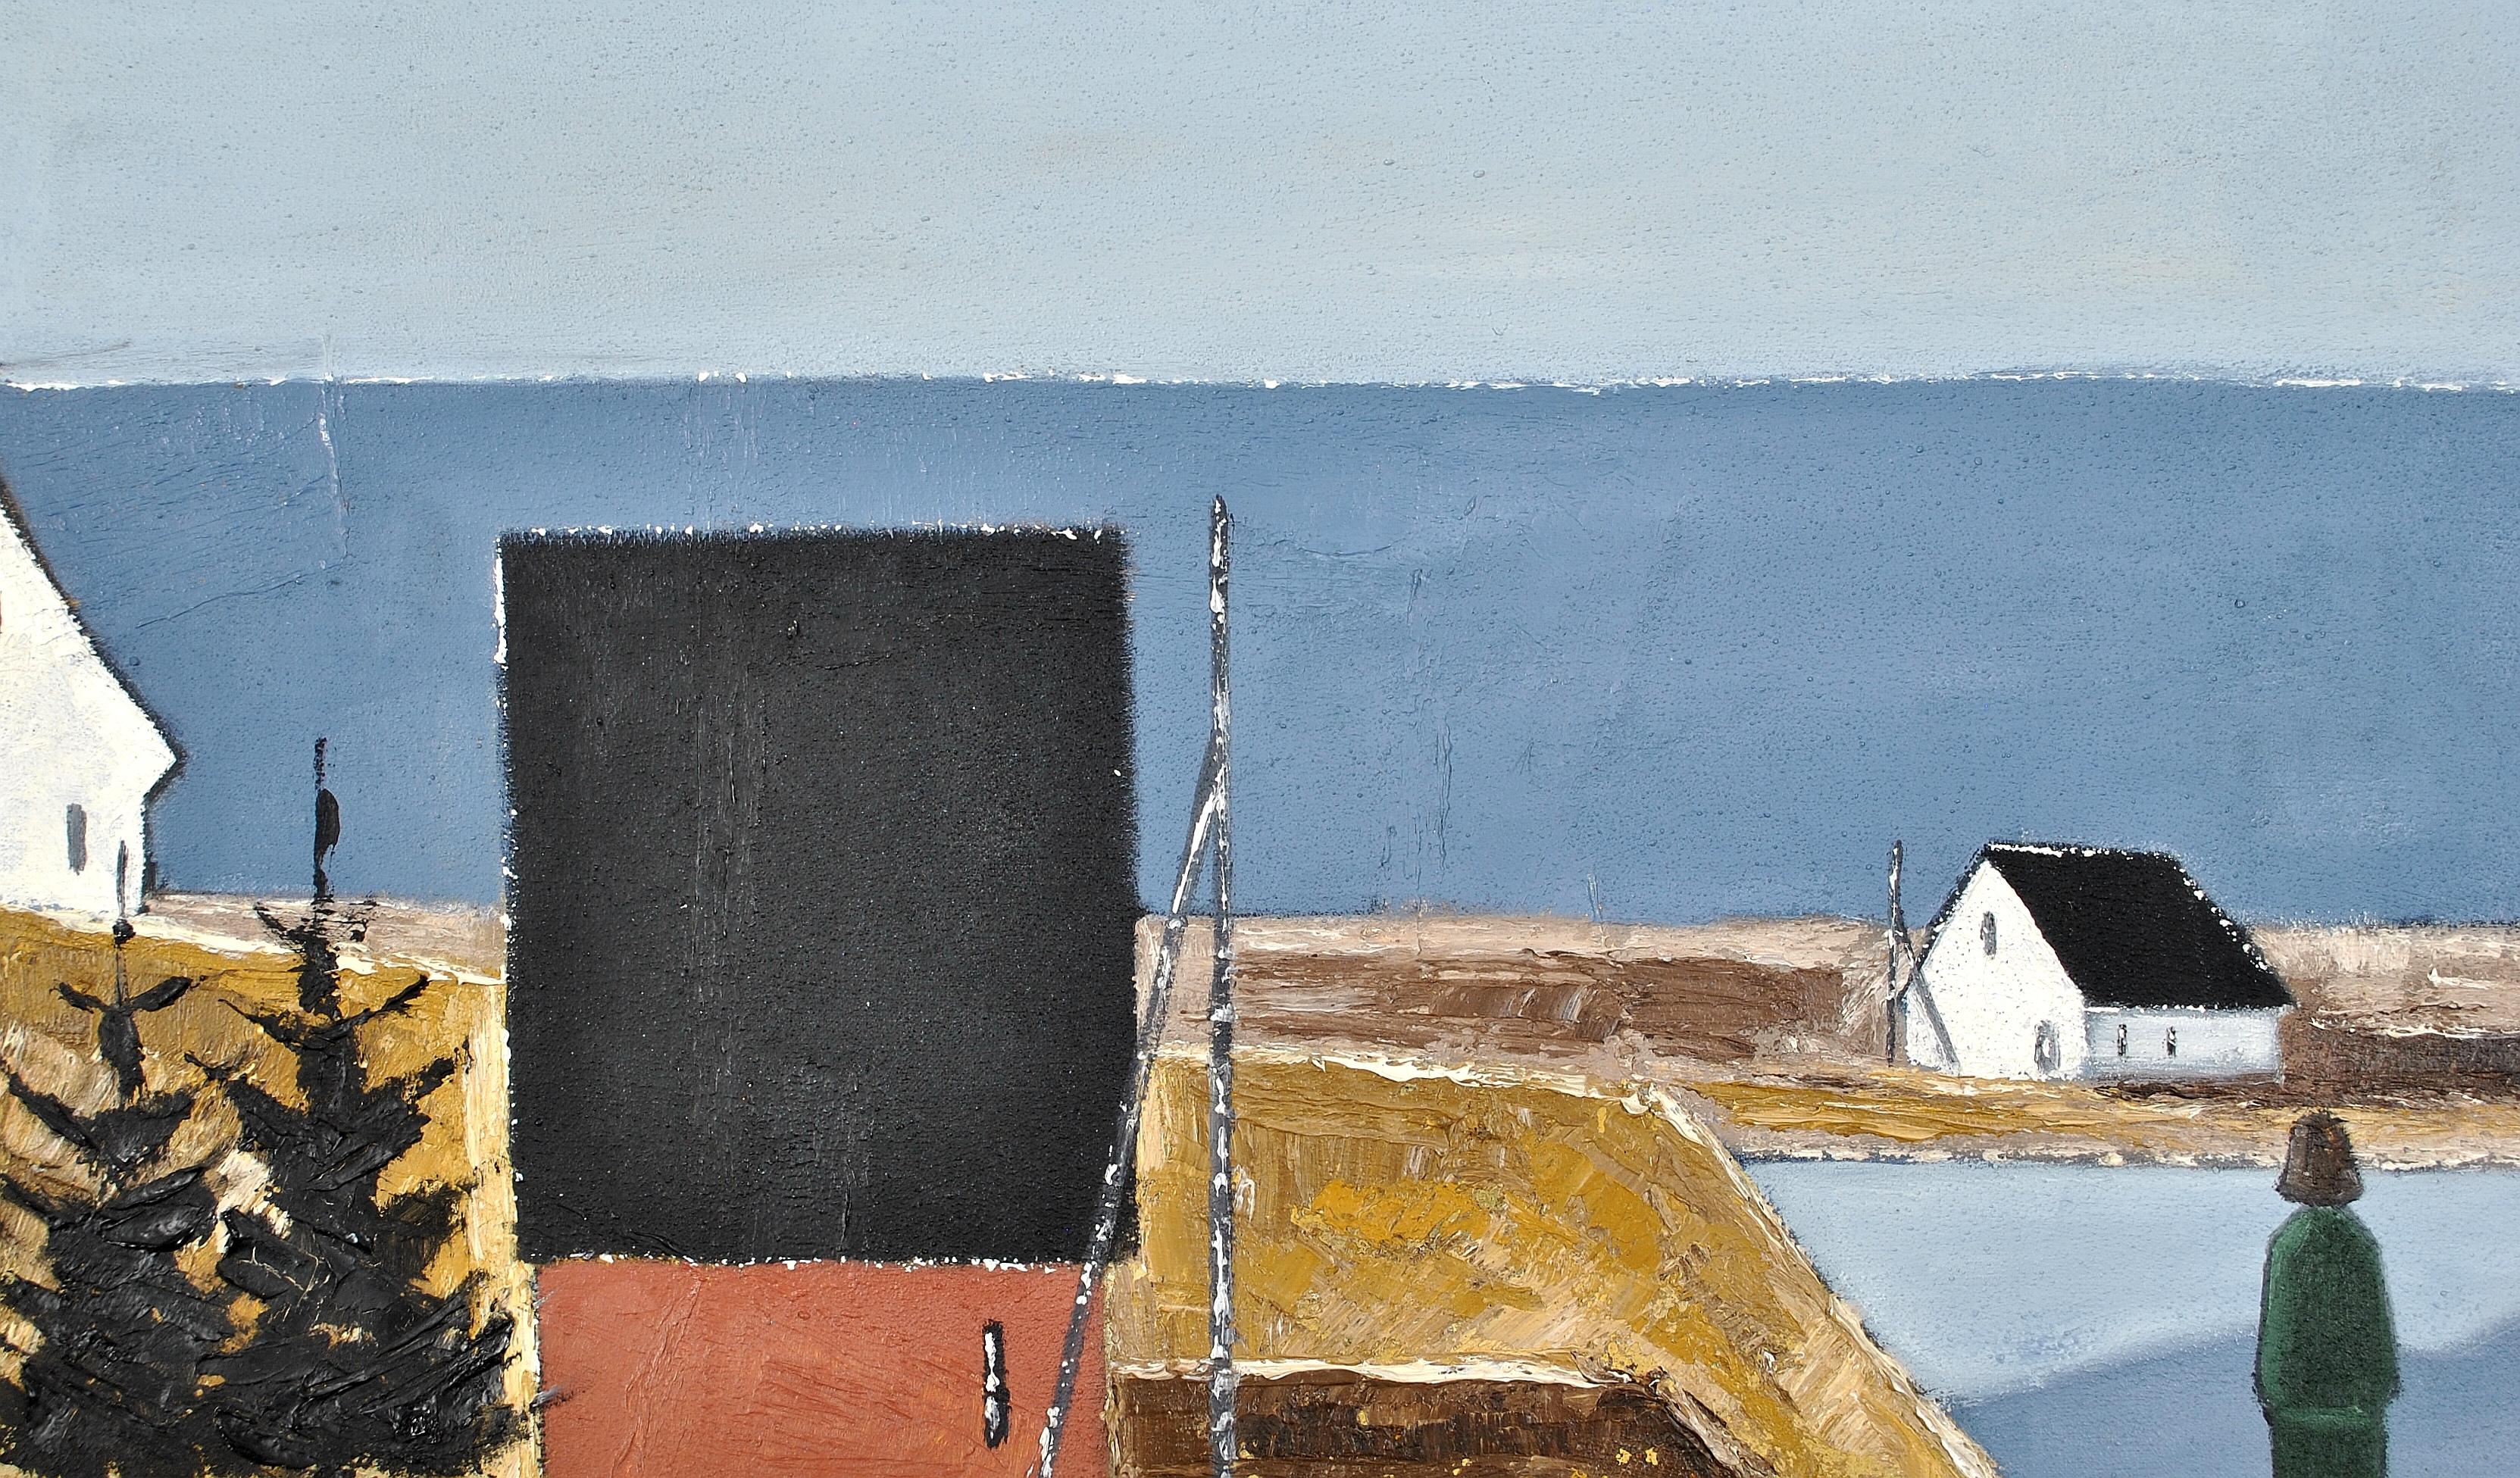 Magnifique huile sur toile suédoise moderniste du milieu du XXe siècle représentant un personnage dans un paysage côtier. 

L'œuvre est peinte dans des tons sourds et dégage une énergie scandinave détendue et apaisante.

Signée avec des initiales en